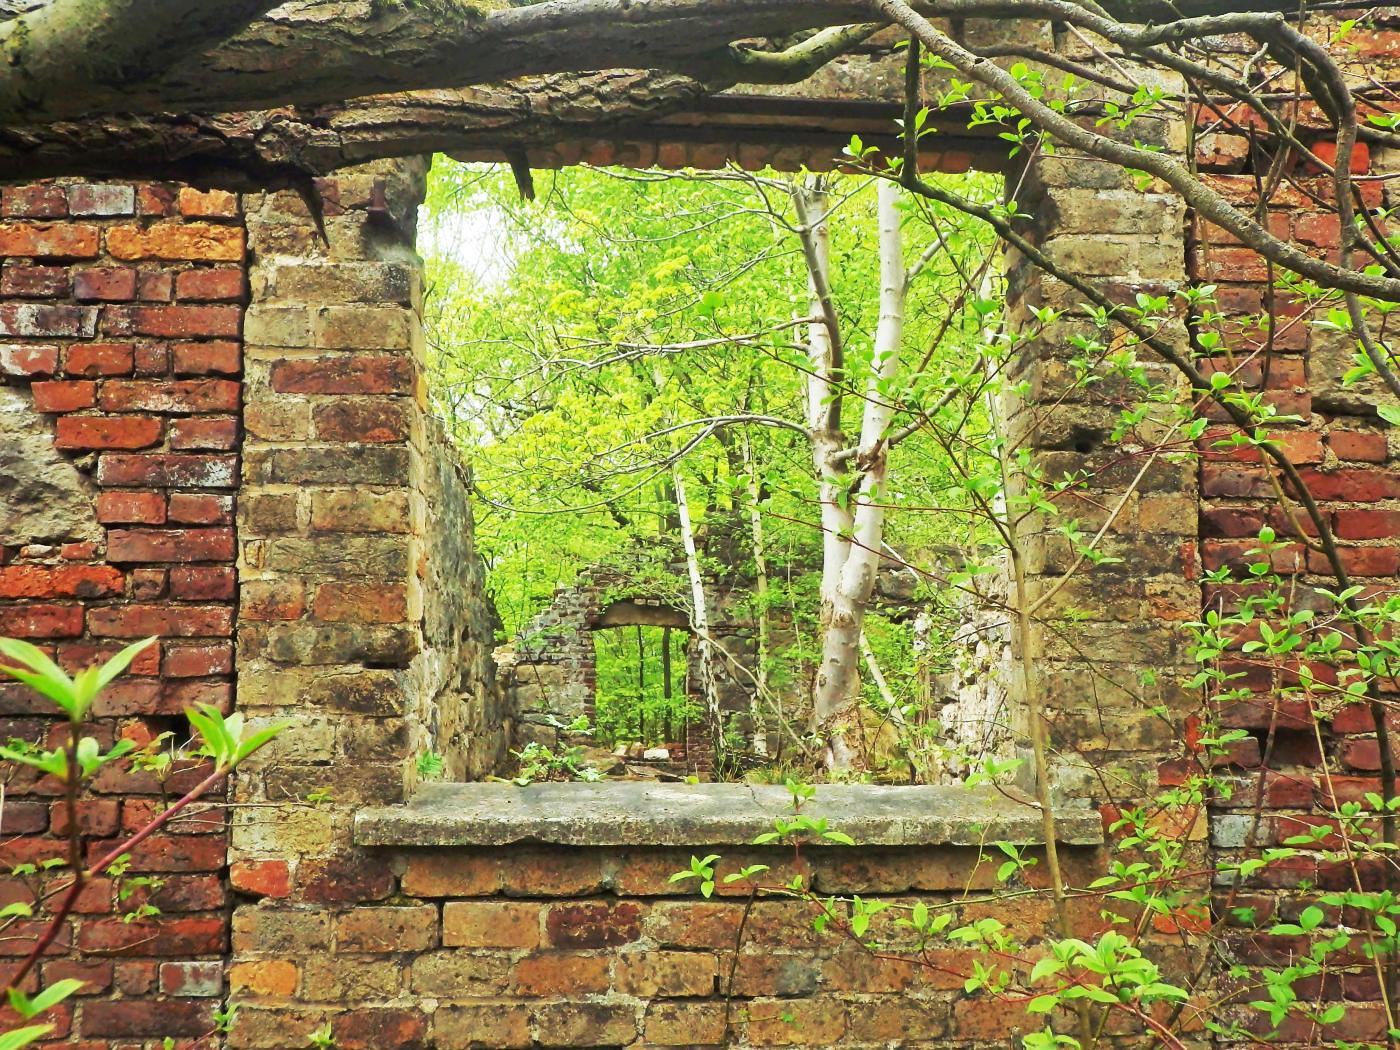 Fenster Ruine